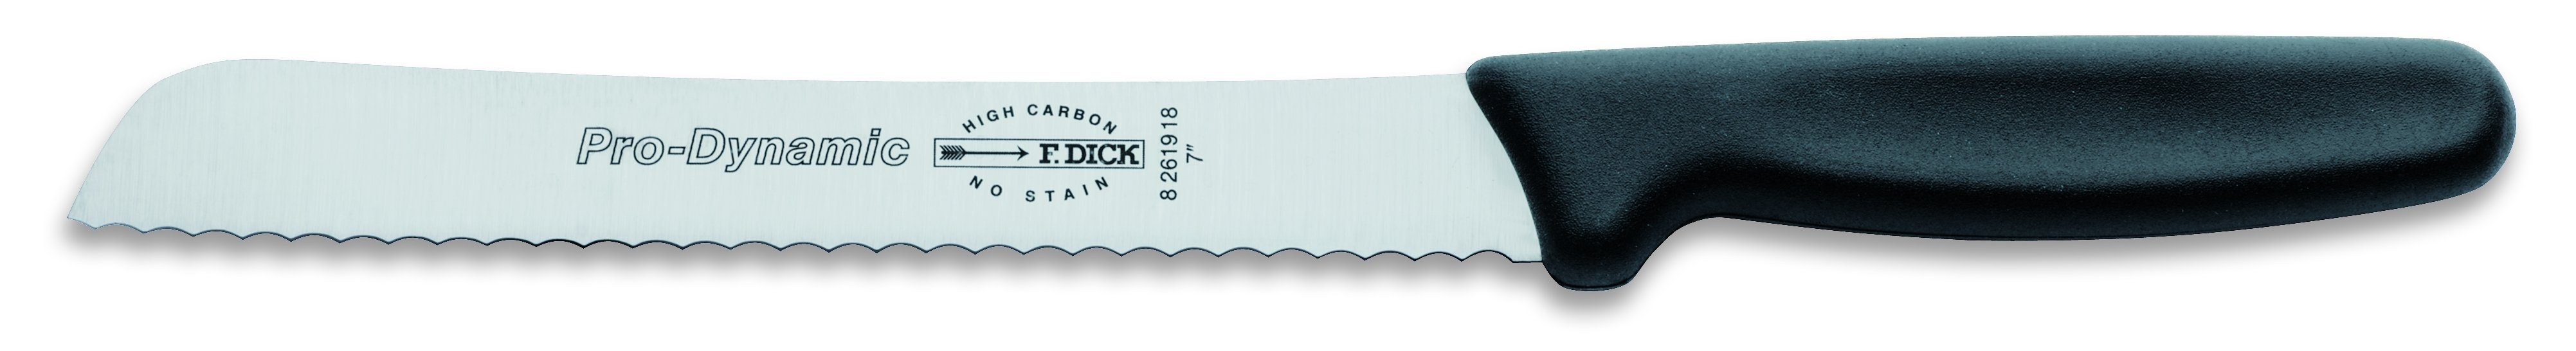 F. DICK Brotmesser F. DICK ProDynamic 18 cm Klingenlänge Brotmesser Kochmesser